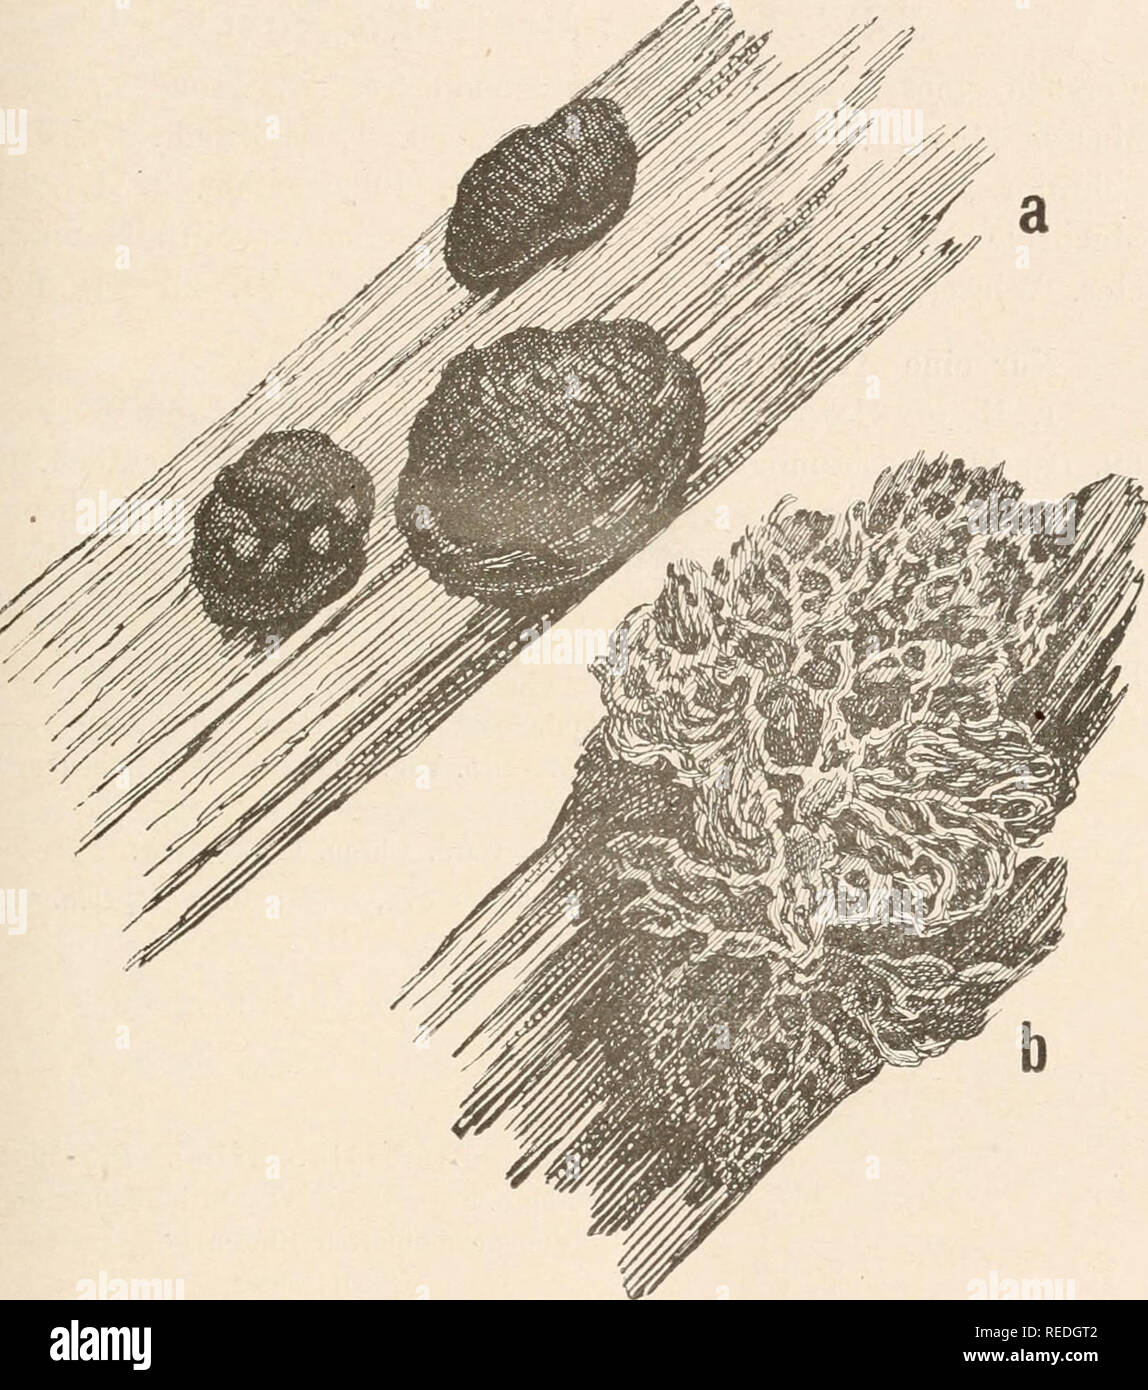 . Dr. L. Rabenhorst's Kryptogamen-Flora von Deutschland, Oesterreich und der Schweiz. Cryptogams -- Germany; Cryptogams -- Austria; Cryptogams -- Switzerland. 275 Syuouyme: Reticularia atra Fr. Syst. Myc. IIl (1829), 86; Eabeu- horst Deutschi. Krypt.-Fl. I, 254. Amaurocliaete atra Eost. Versuch eines Systems der Mycetozoeu (1873), 8, MonogT., 210, fig. 67; Schröter iu Cohu Krypt.-Fl. Schles. III, 1, 115; Massee Monogr., 89; Öelak. Myxom. Böhm., 44; Lister Monogr. ed. 1, 134, pl.^ LI, A, flg. a, b; Schiuz in Mitt. Naturw. Ges. Winterthur L 77,. Fig. 109. Amaurochaete fuligiuosa (Sowbery) Macbr Stock Photo